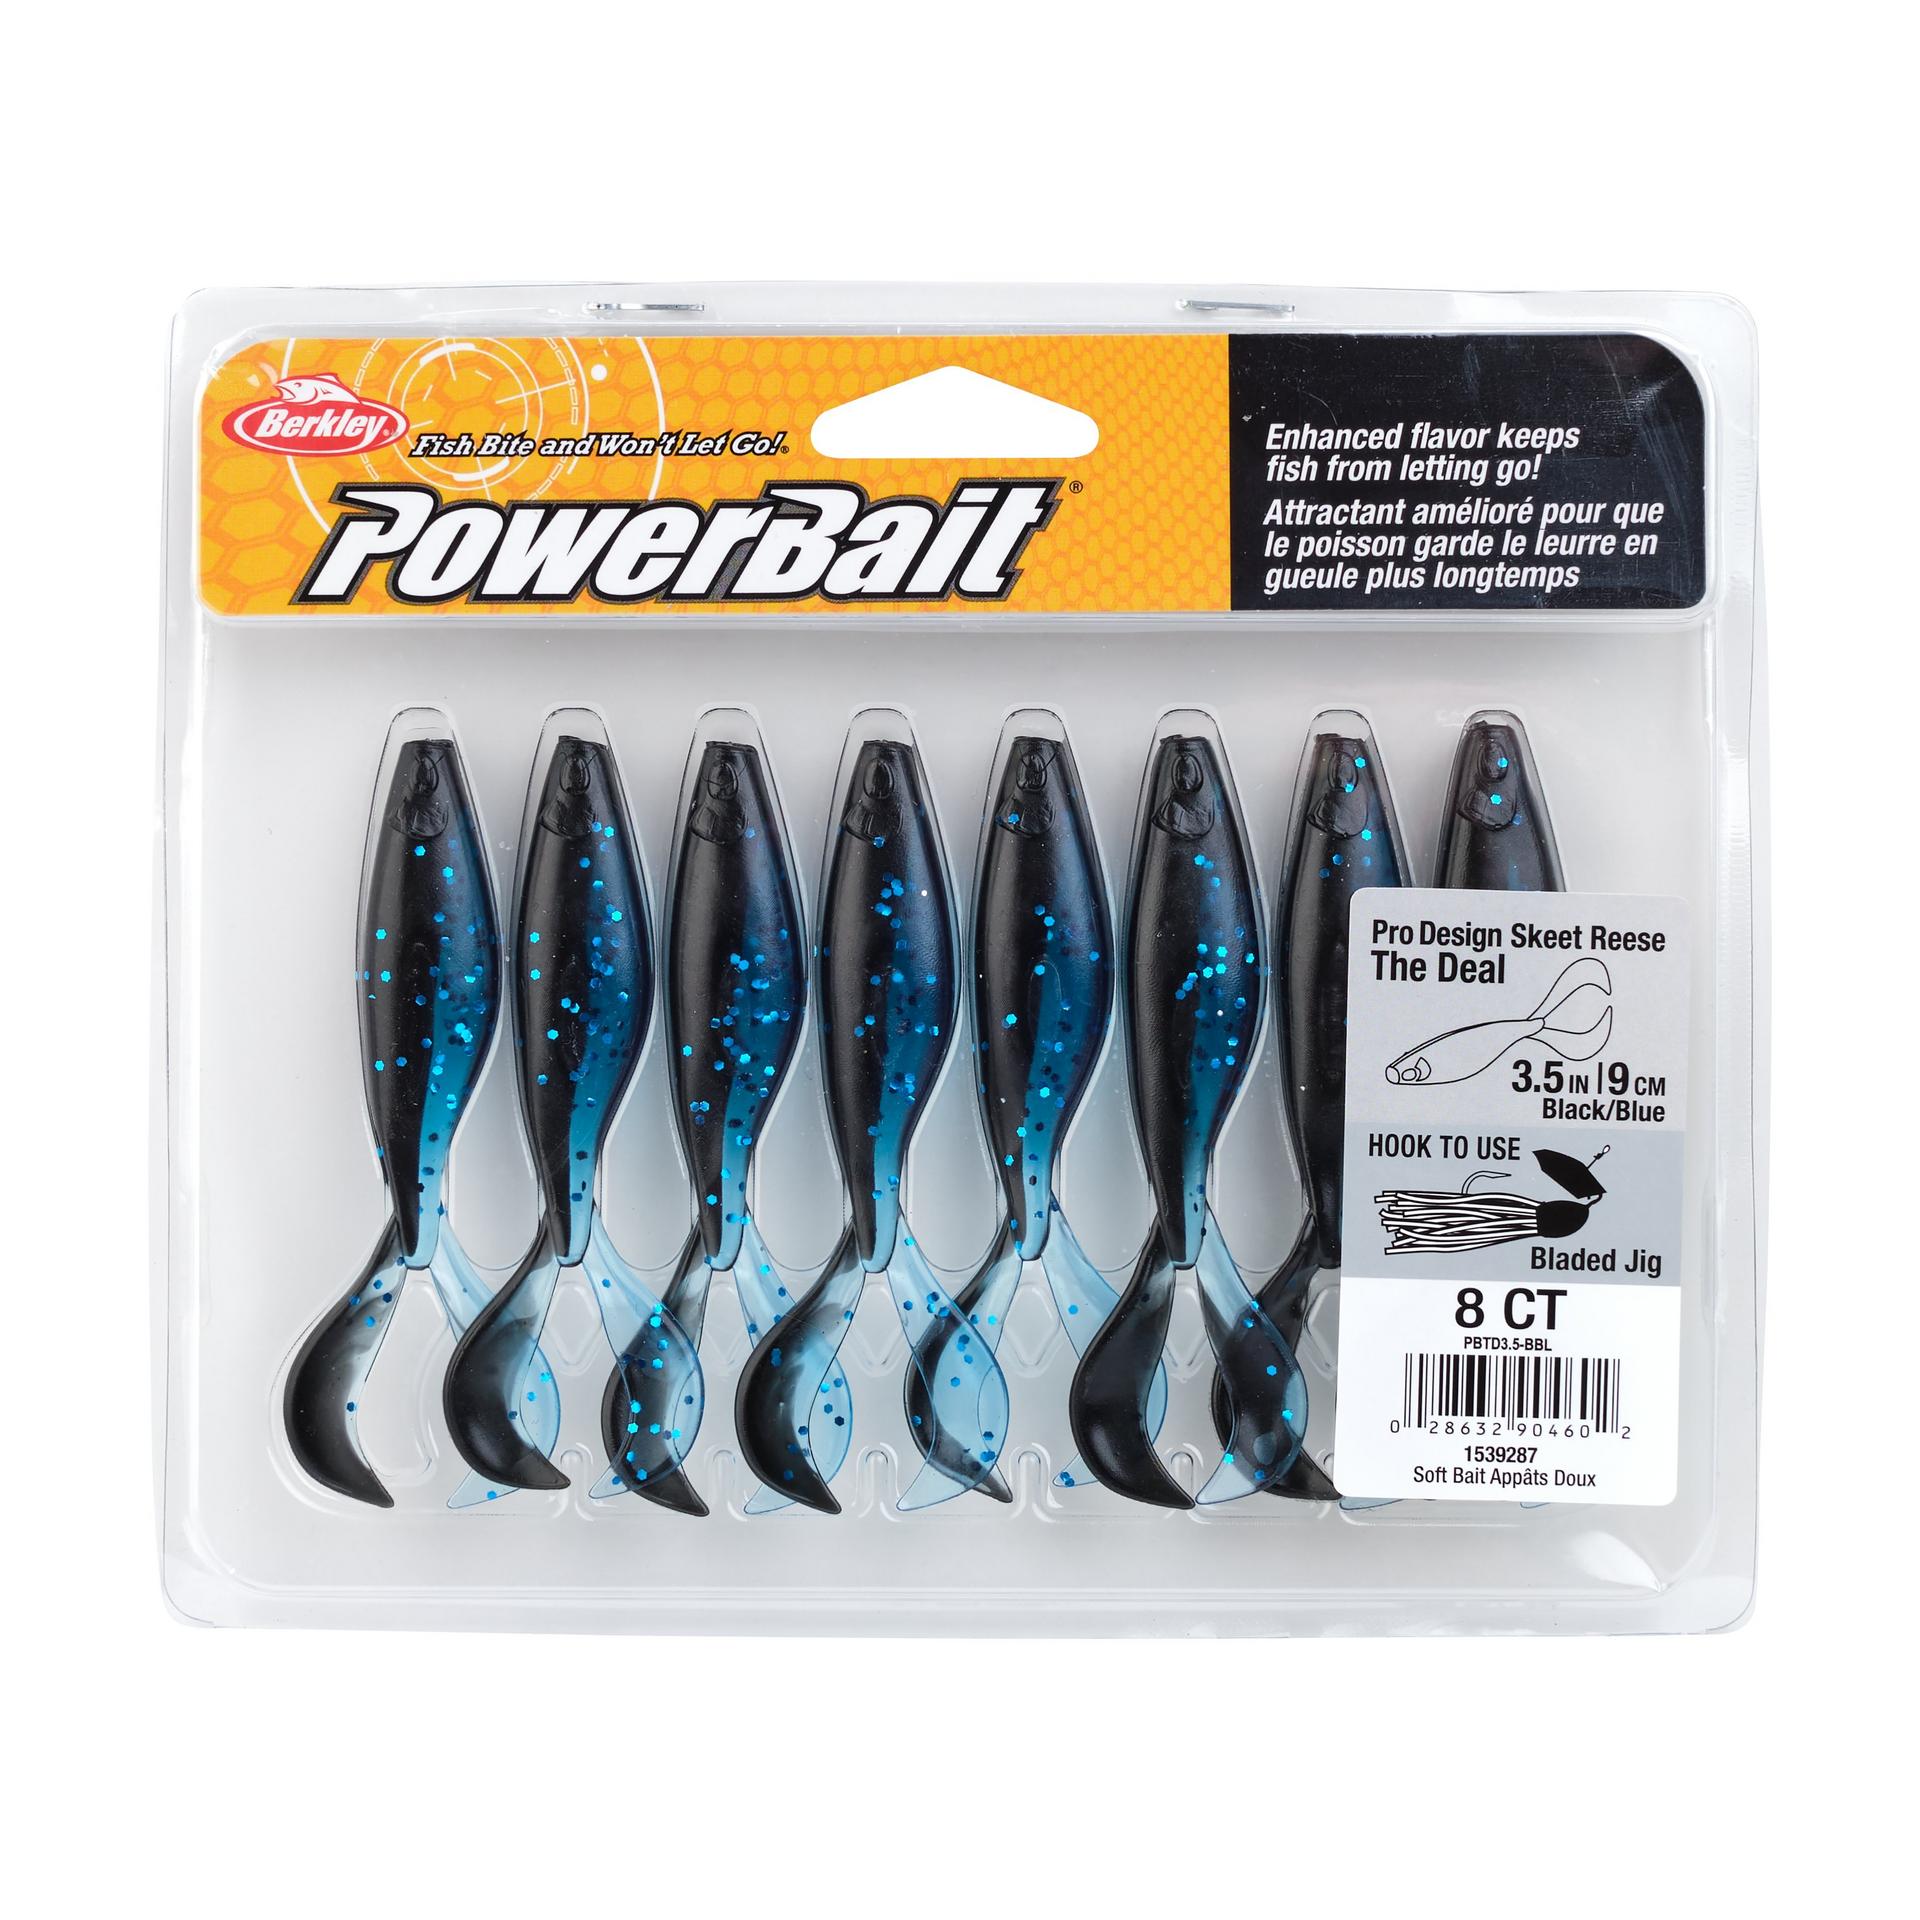 PowerBaitTheDeal BlackBlue 3.5in PKG | Berkley Fishing